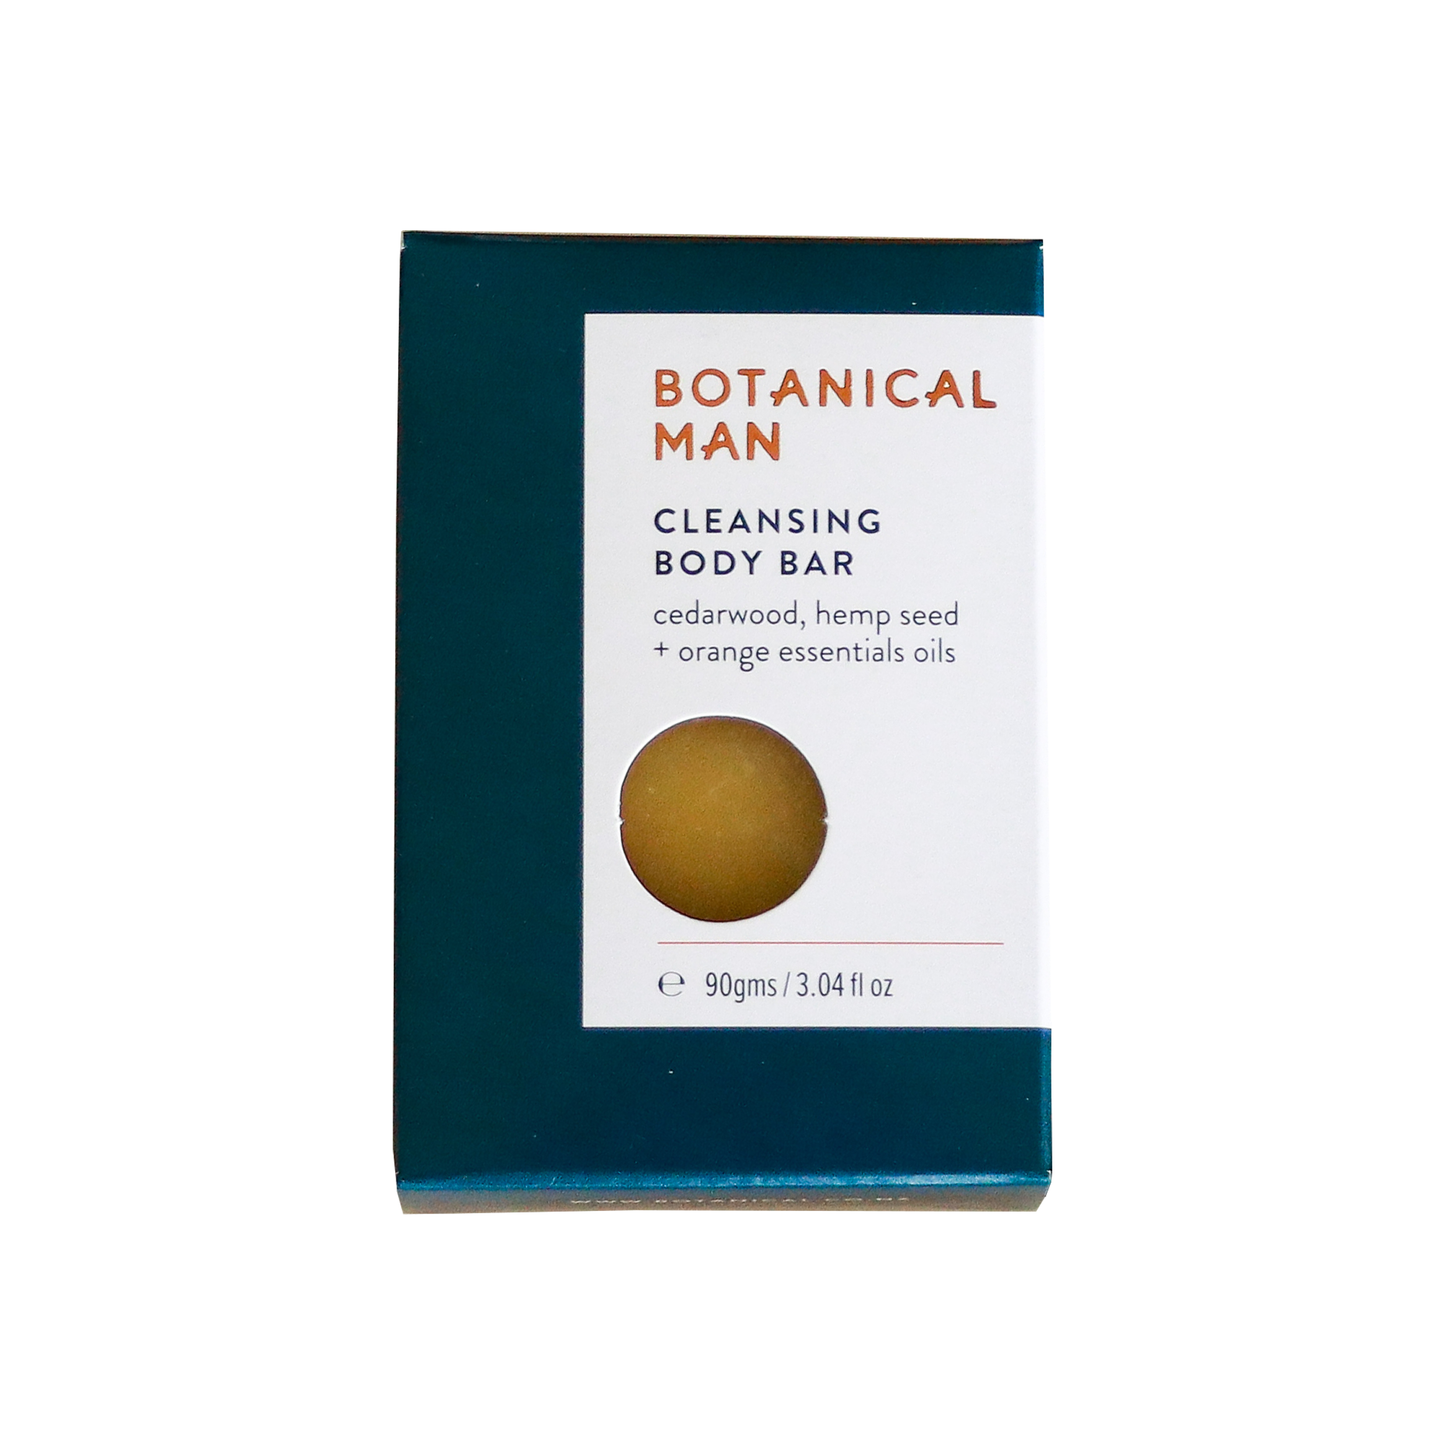 Botanical Man Cleansing Body Bar